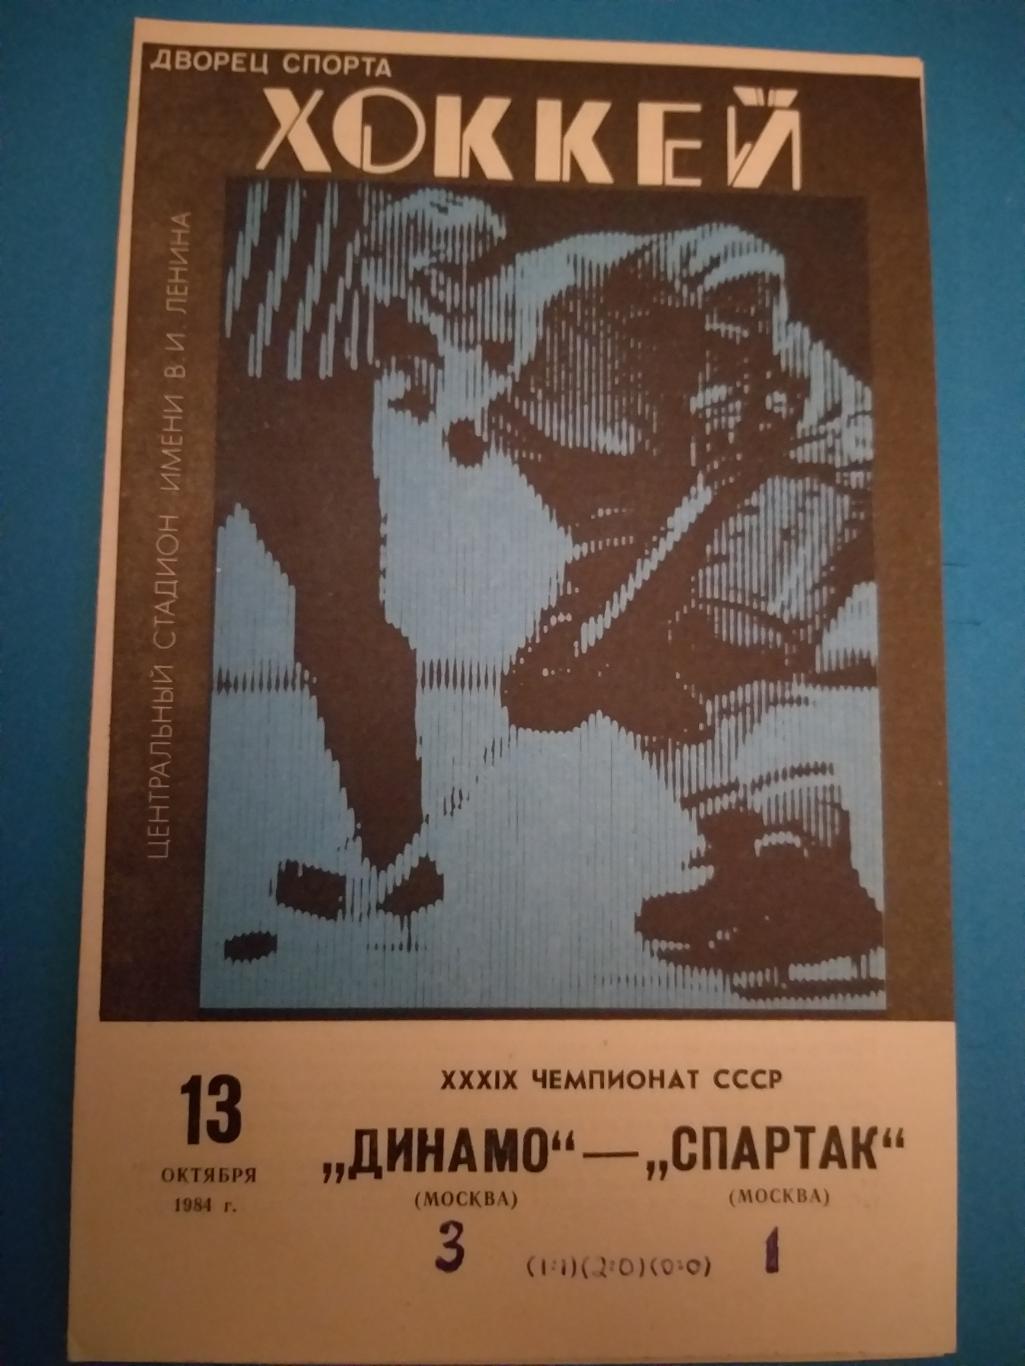 Динамо(Москва)- Спартак(Москва) 13.10.1984